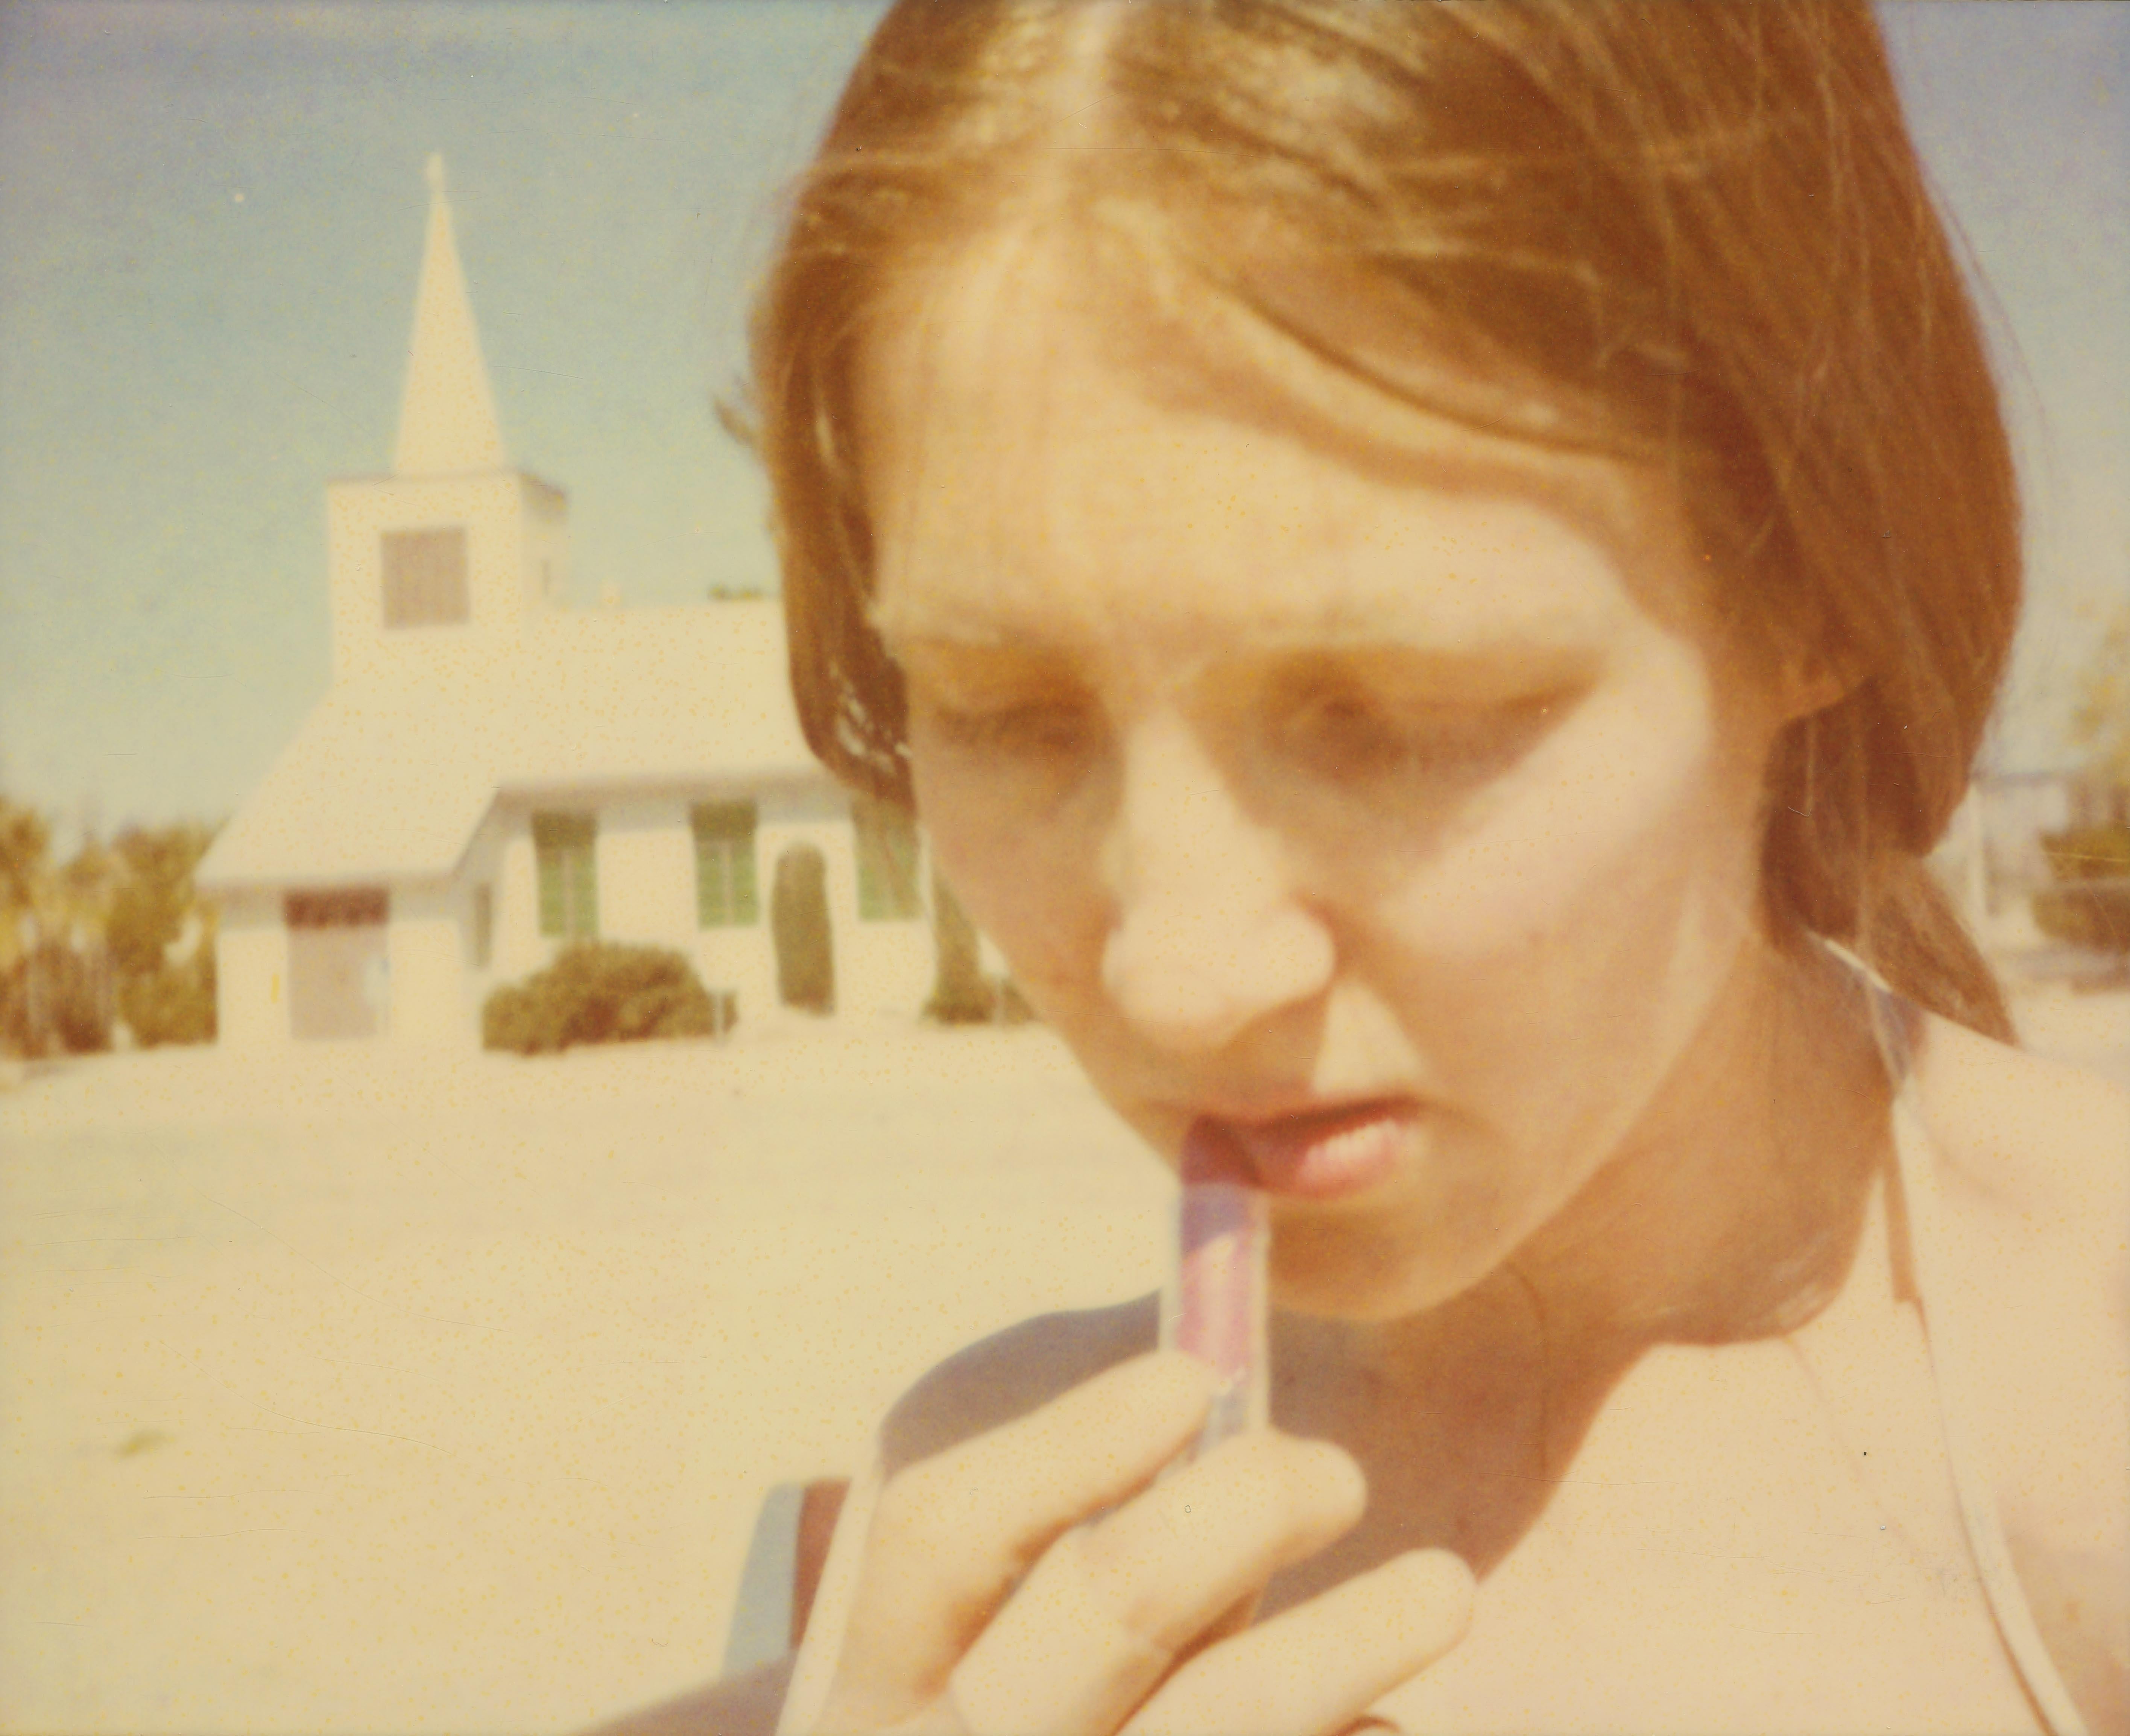 Stefanie Schneider Portrait Photograph - Lipstick (Sidewinder) - 21st Century, Polaroid, Contemporary, Women, Portrait